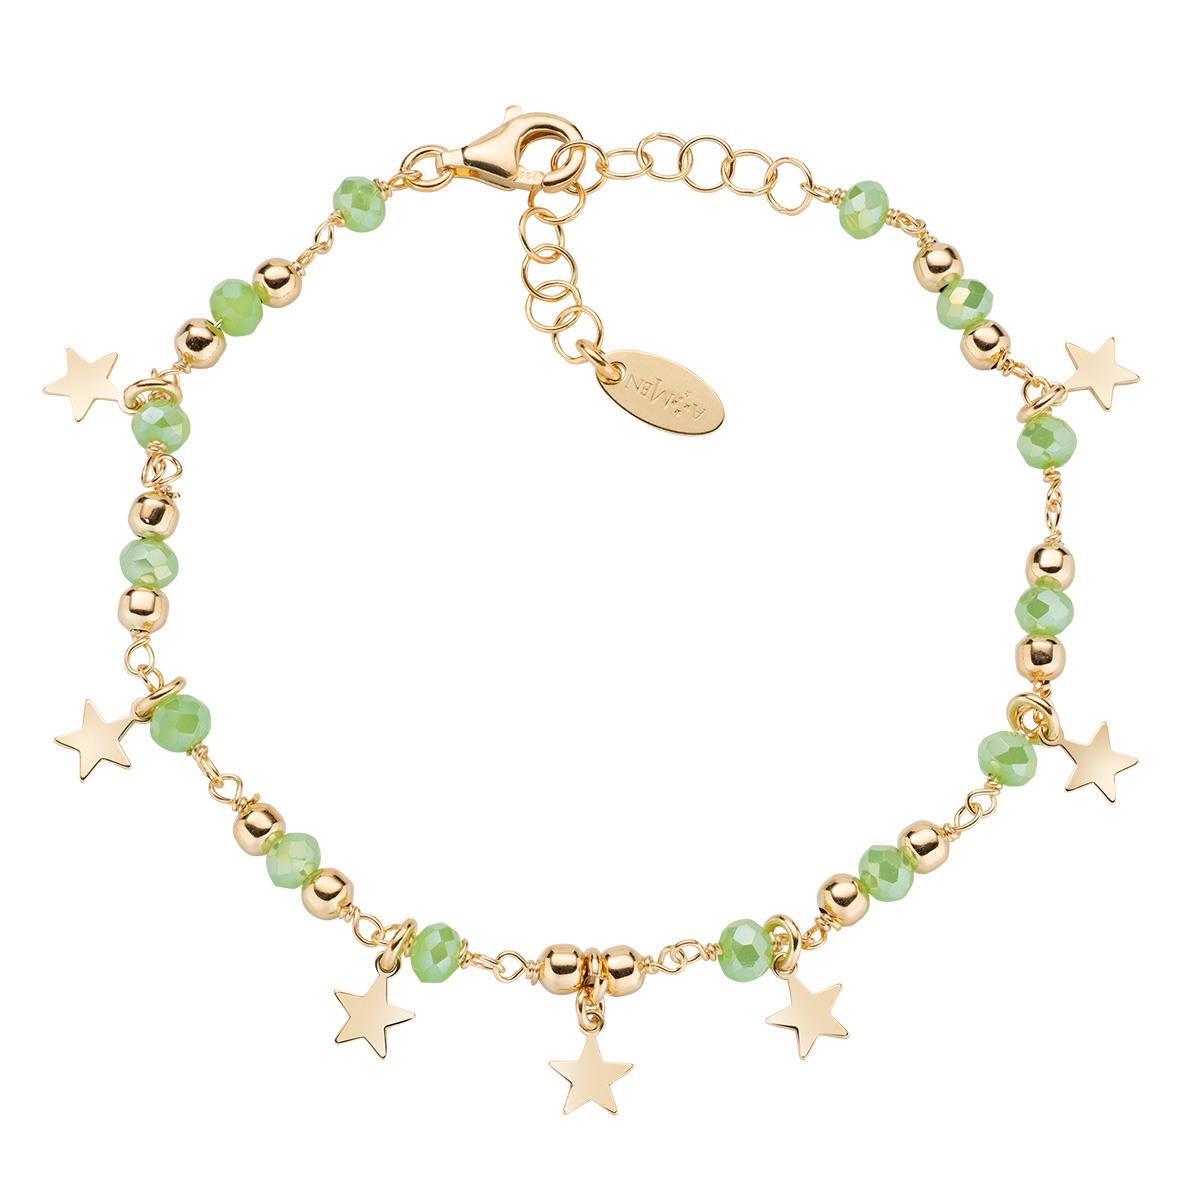 Bracciale Charm Elegance Dorata con Cristalli Verde Chiaro - Amen Collection Ref. BRMSTEGVE - AMEN